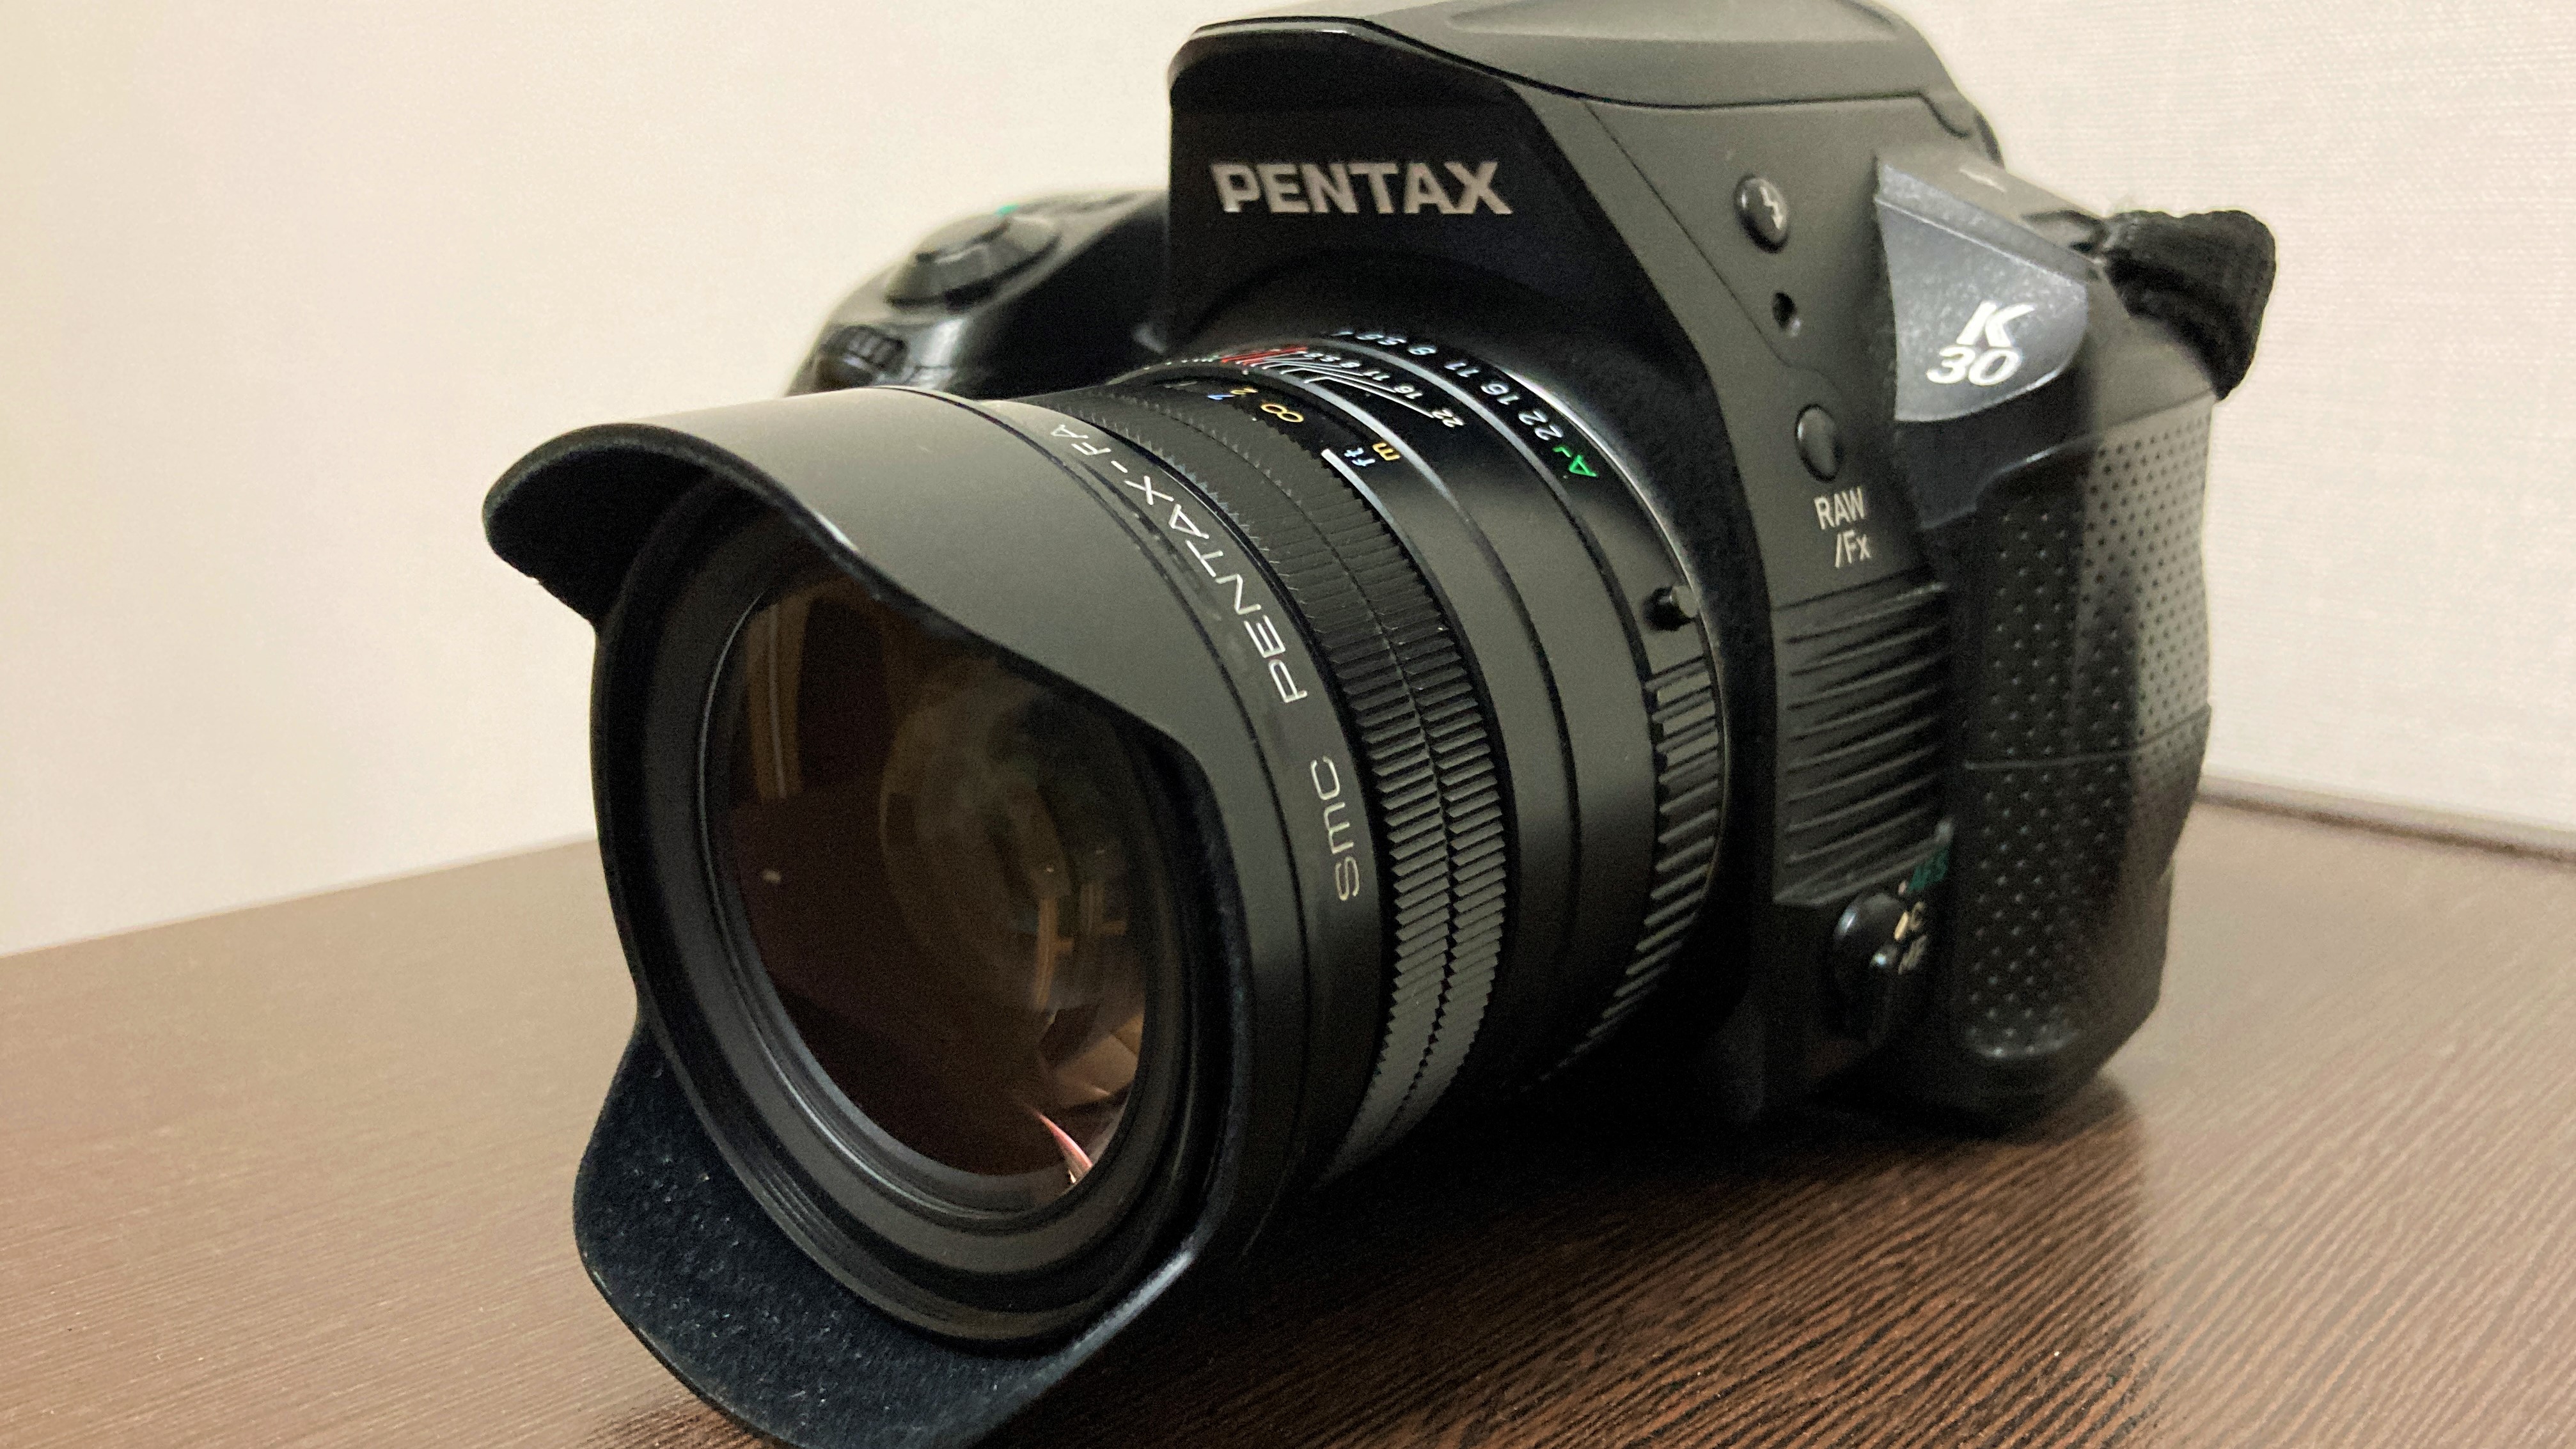 長期納期 PENTAX FA31F1.8AL LTD/B ユーズド品　単焦点レンズ その他